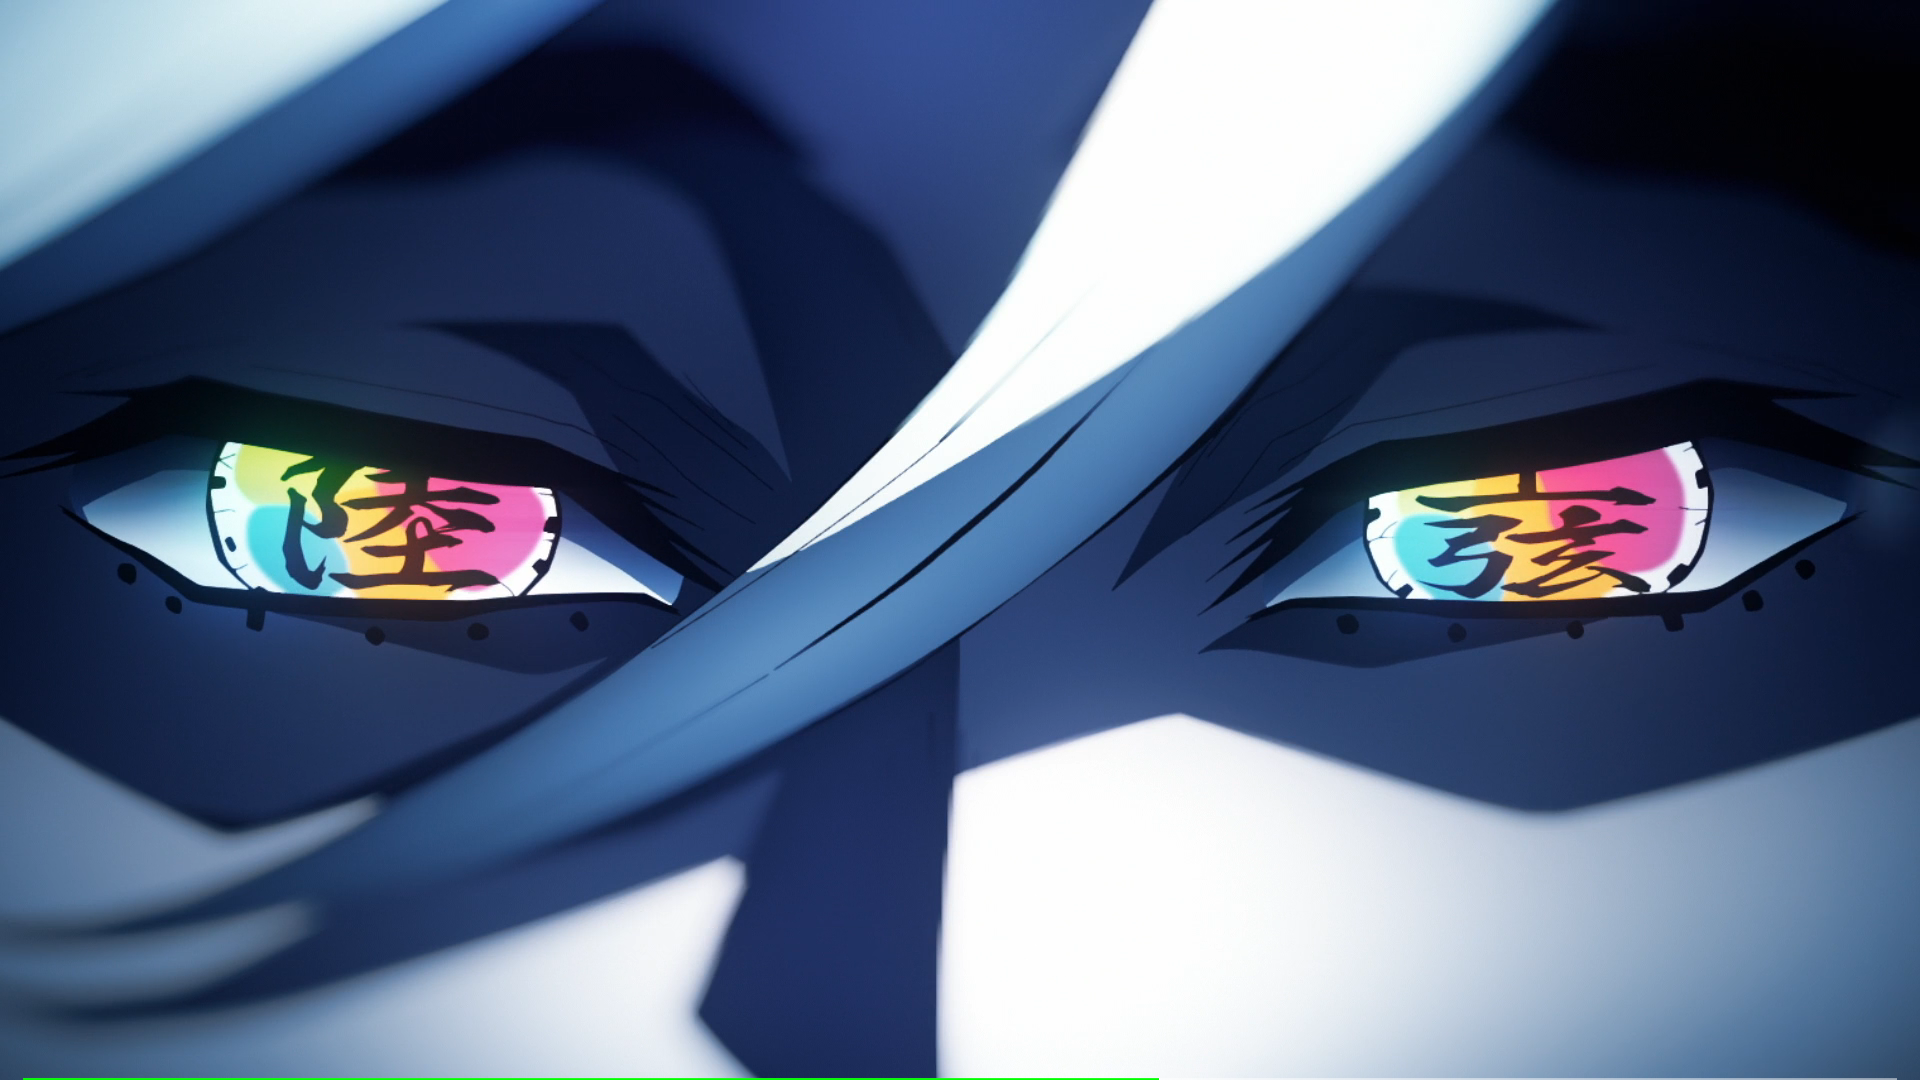 Kimetsu No Yaiba 11 Eyes Anime Anime Screenshot 1920x1080